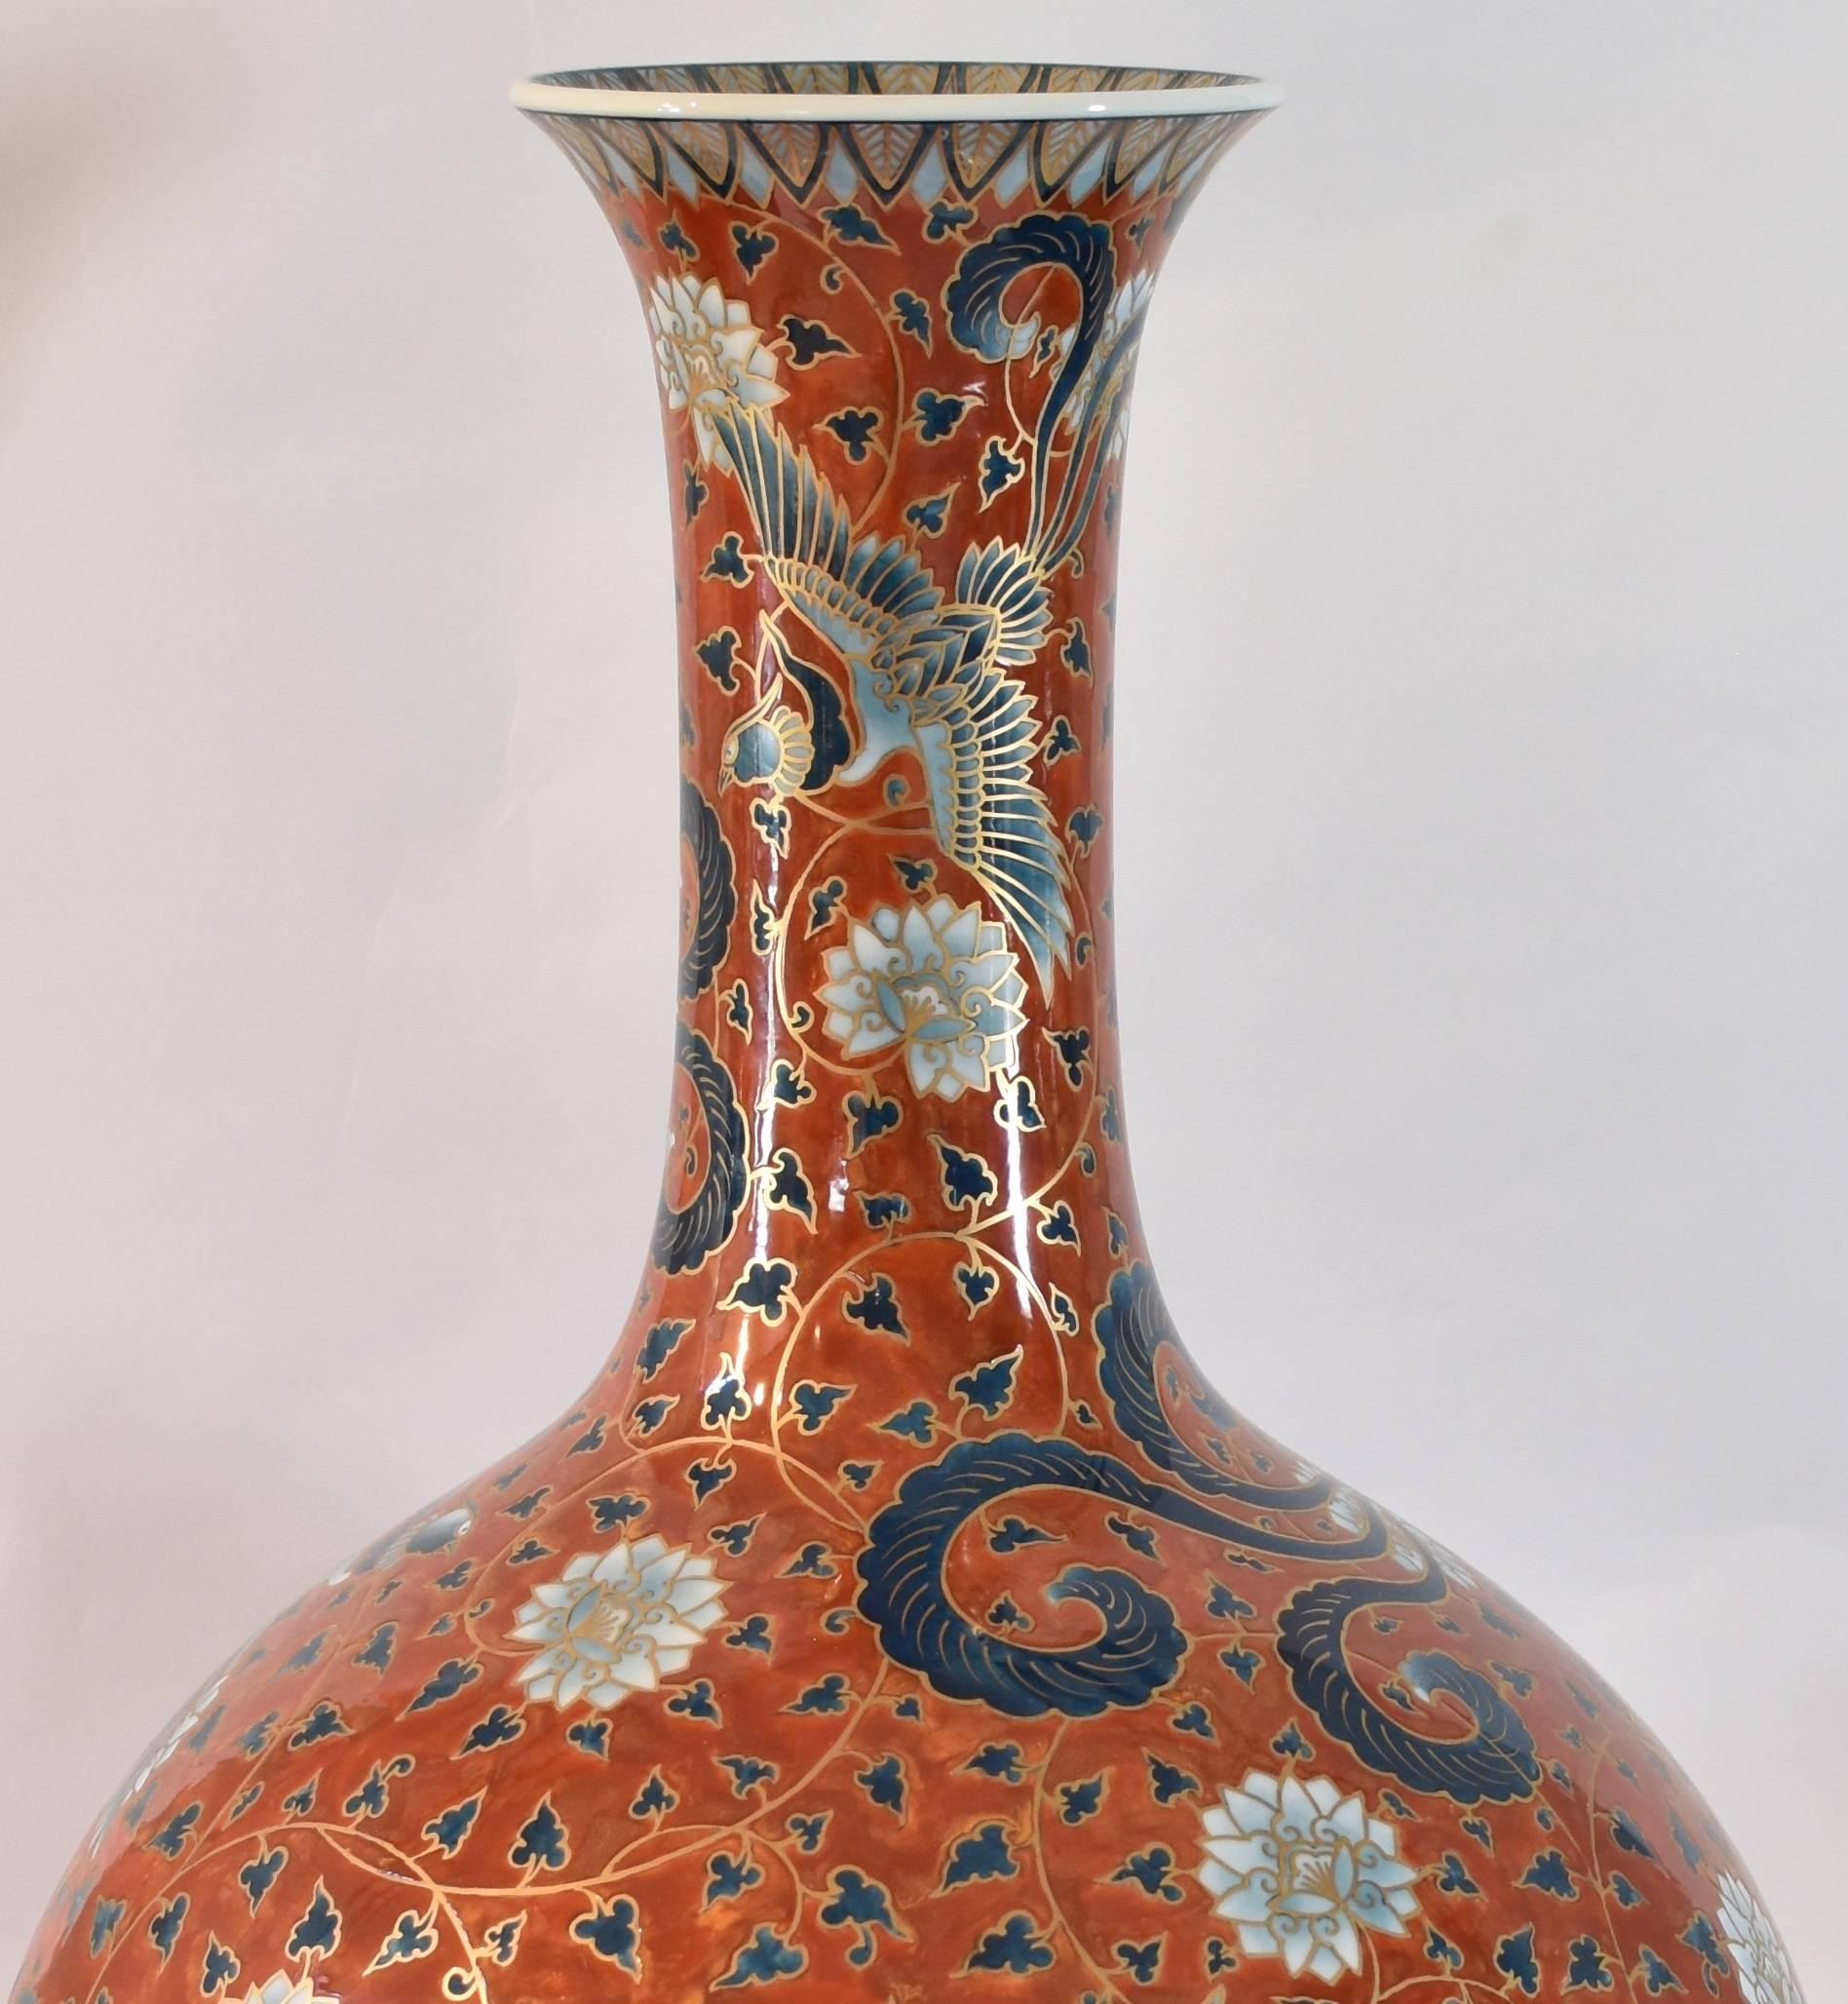 Große japanische Vase aus vergoldetem Porzellan von zeitgenössischem Künstler (Vergoldet)